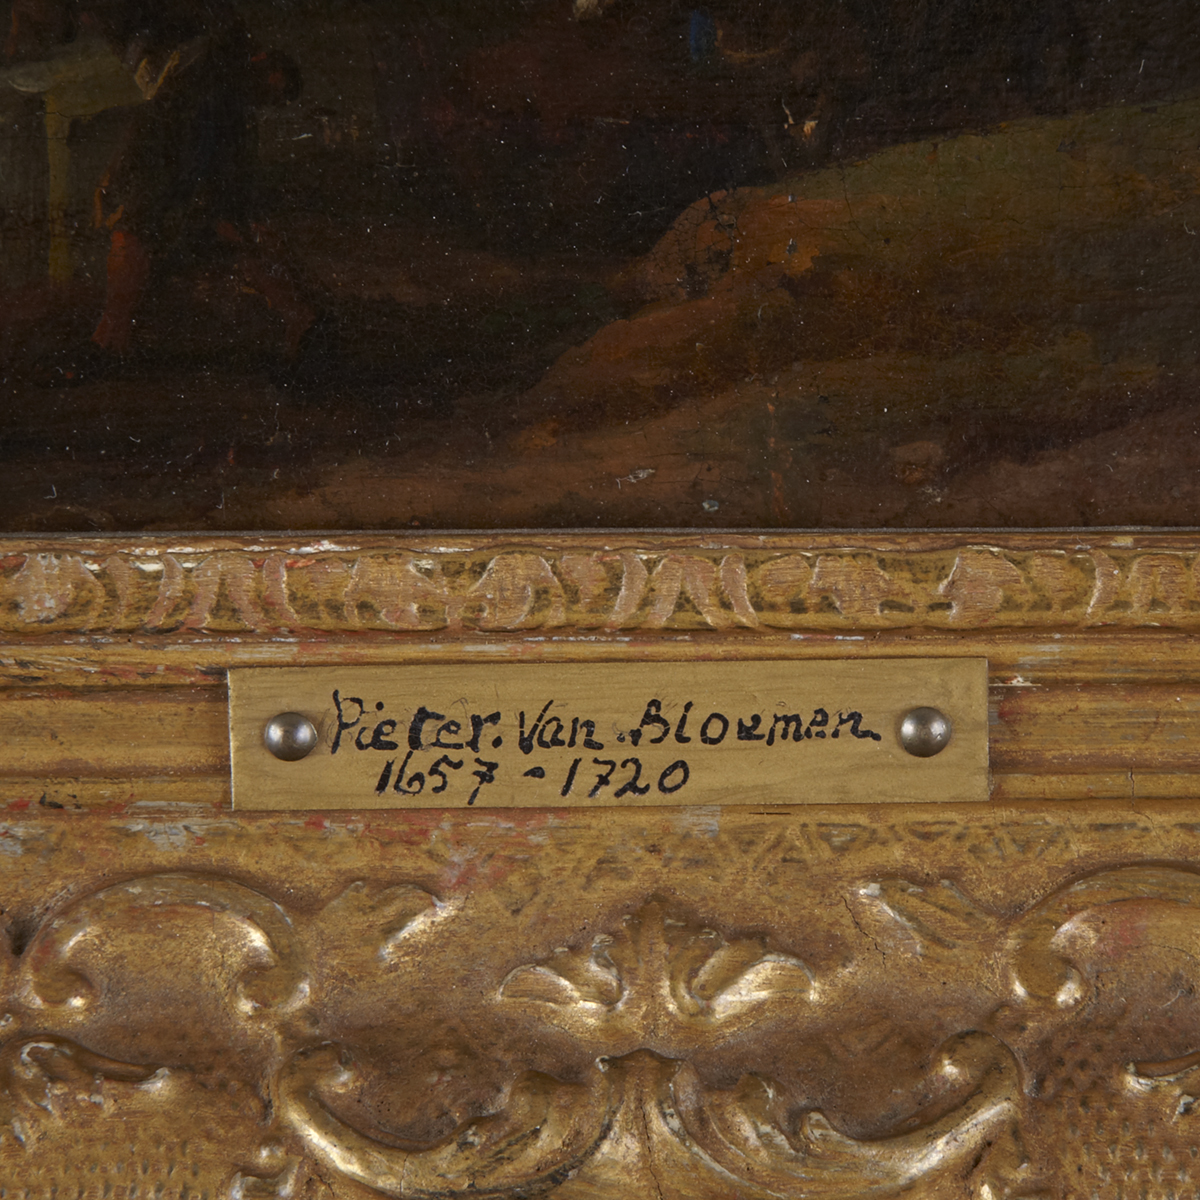 Attributed to Pieter van Bloemen (1657-1720)